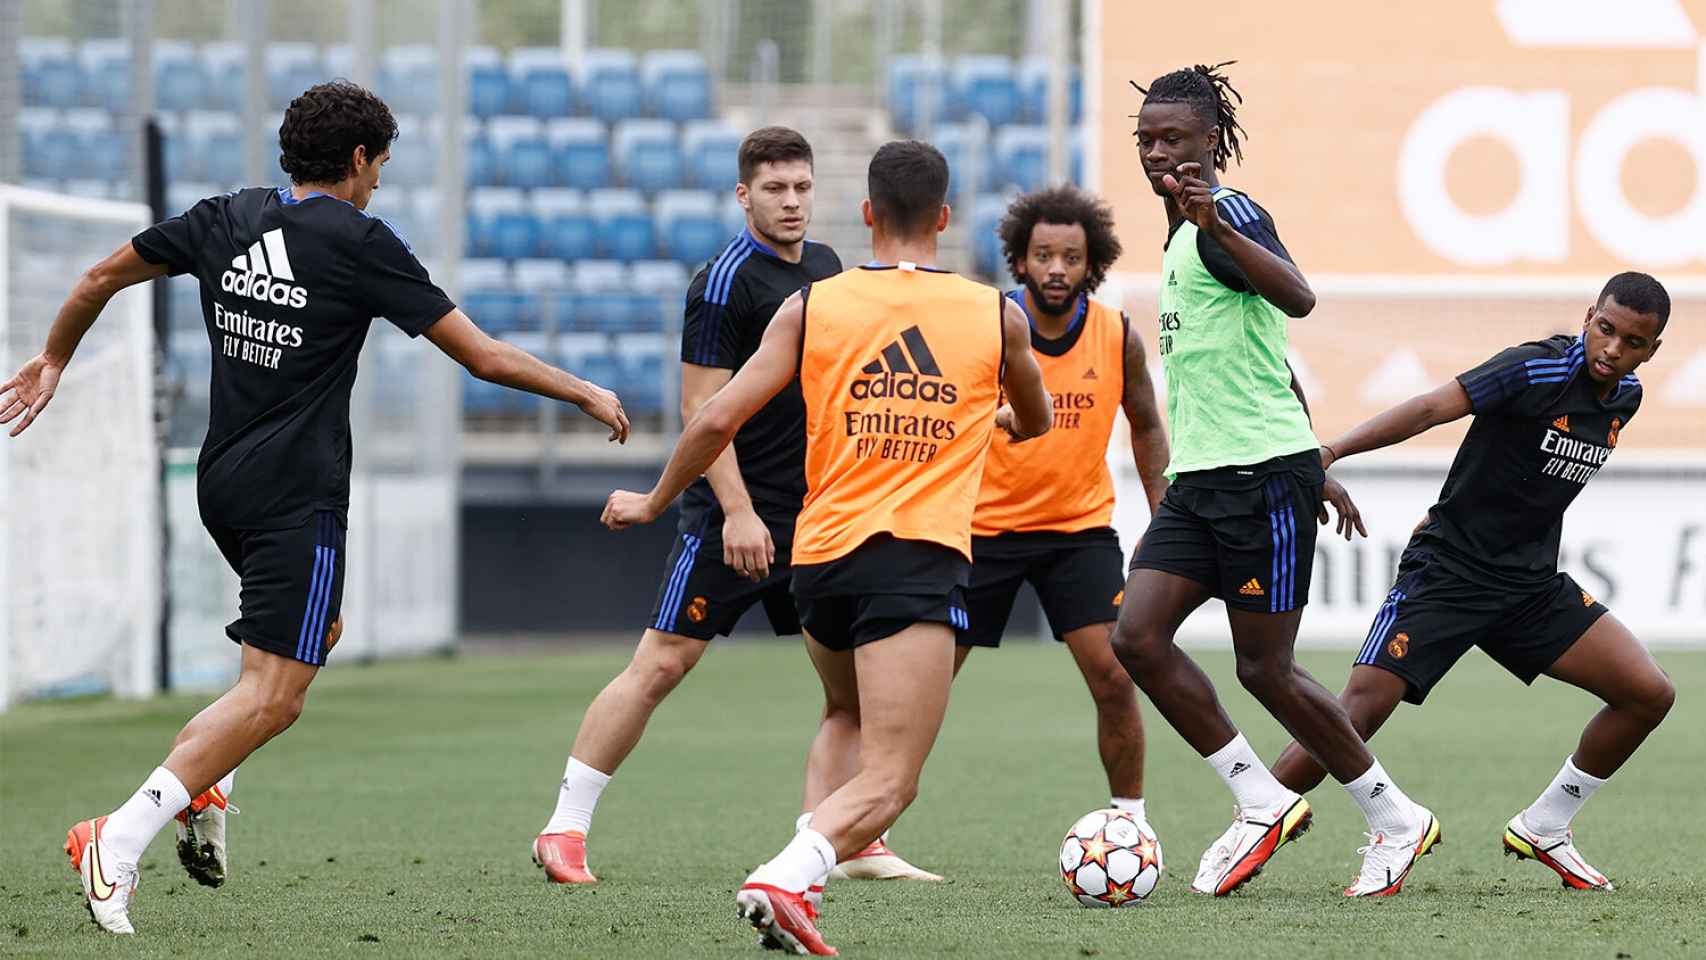 Jesús Vallejo, Luka Jovic, Lucas Vázquez, Marcelo, Eduardo Camavinga y Rodrygo Goes, durante un entrenamiento del Real Madrid